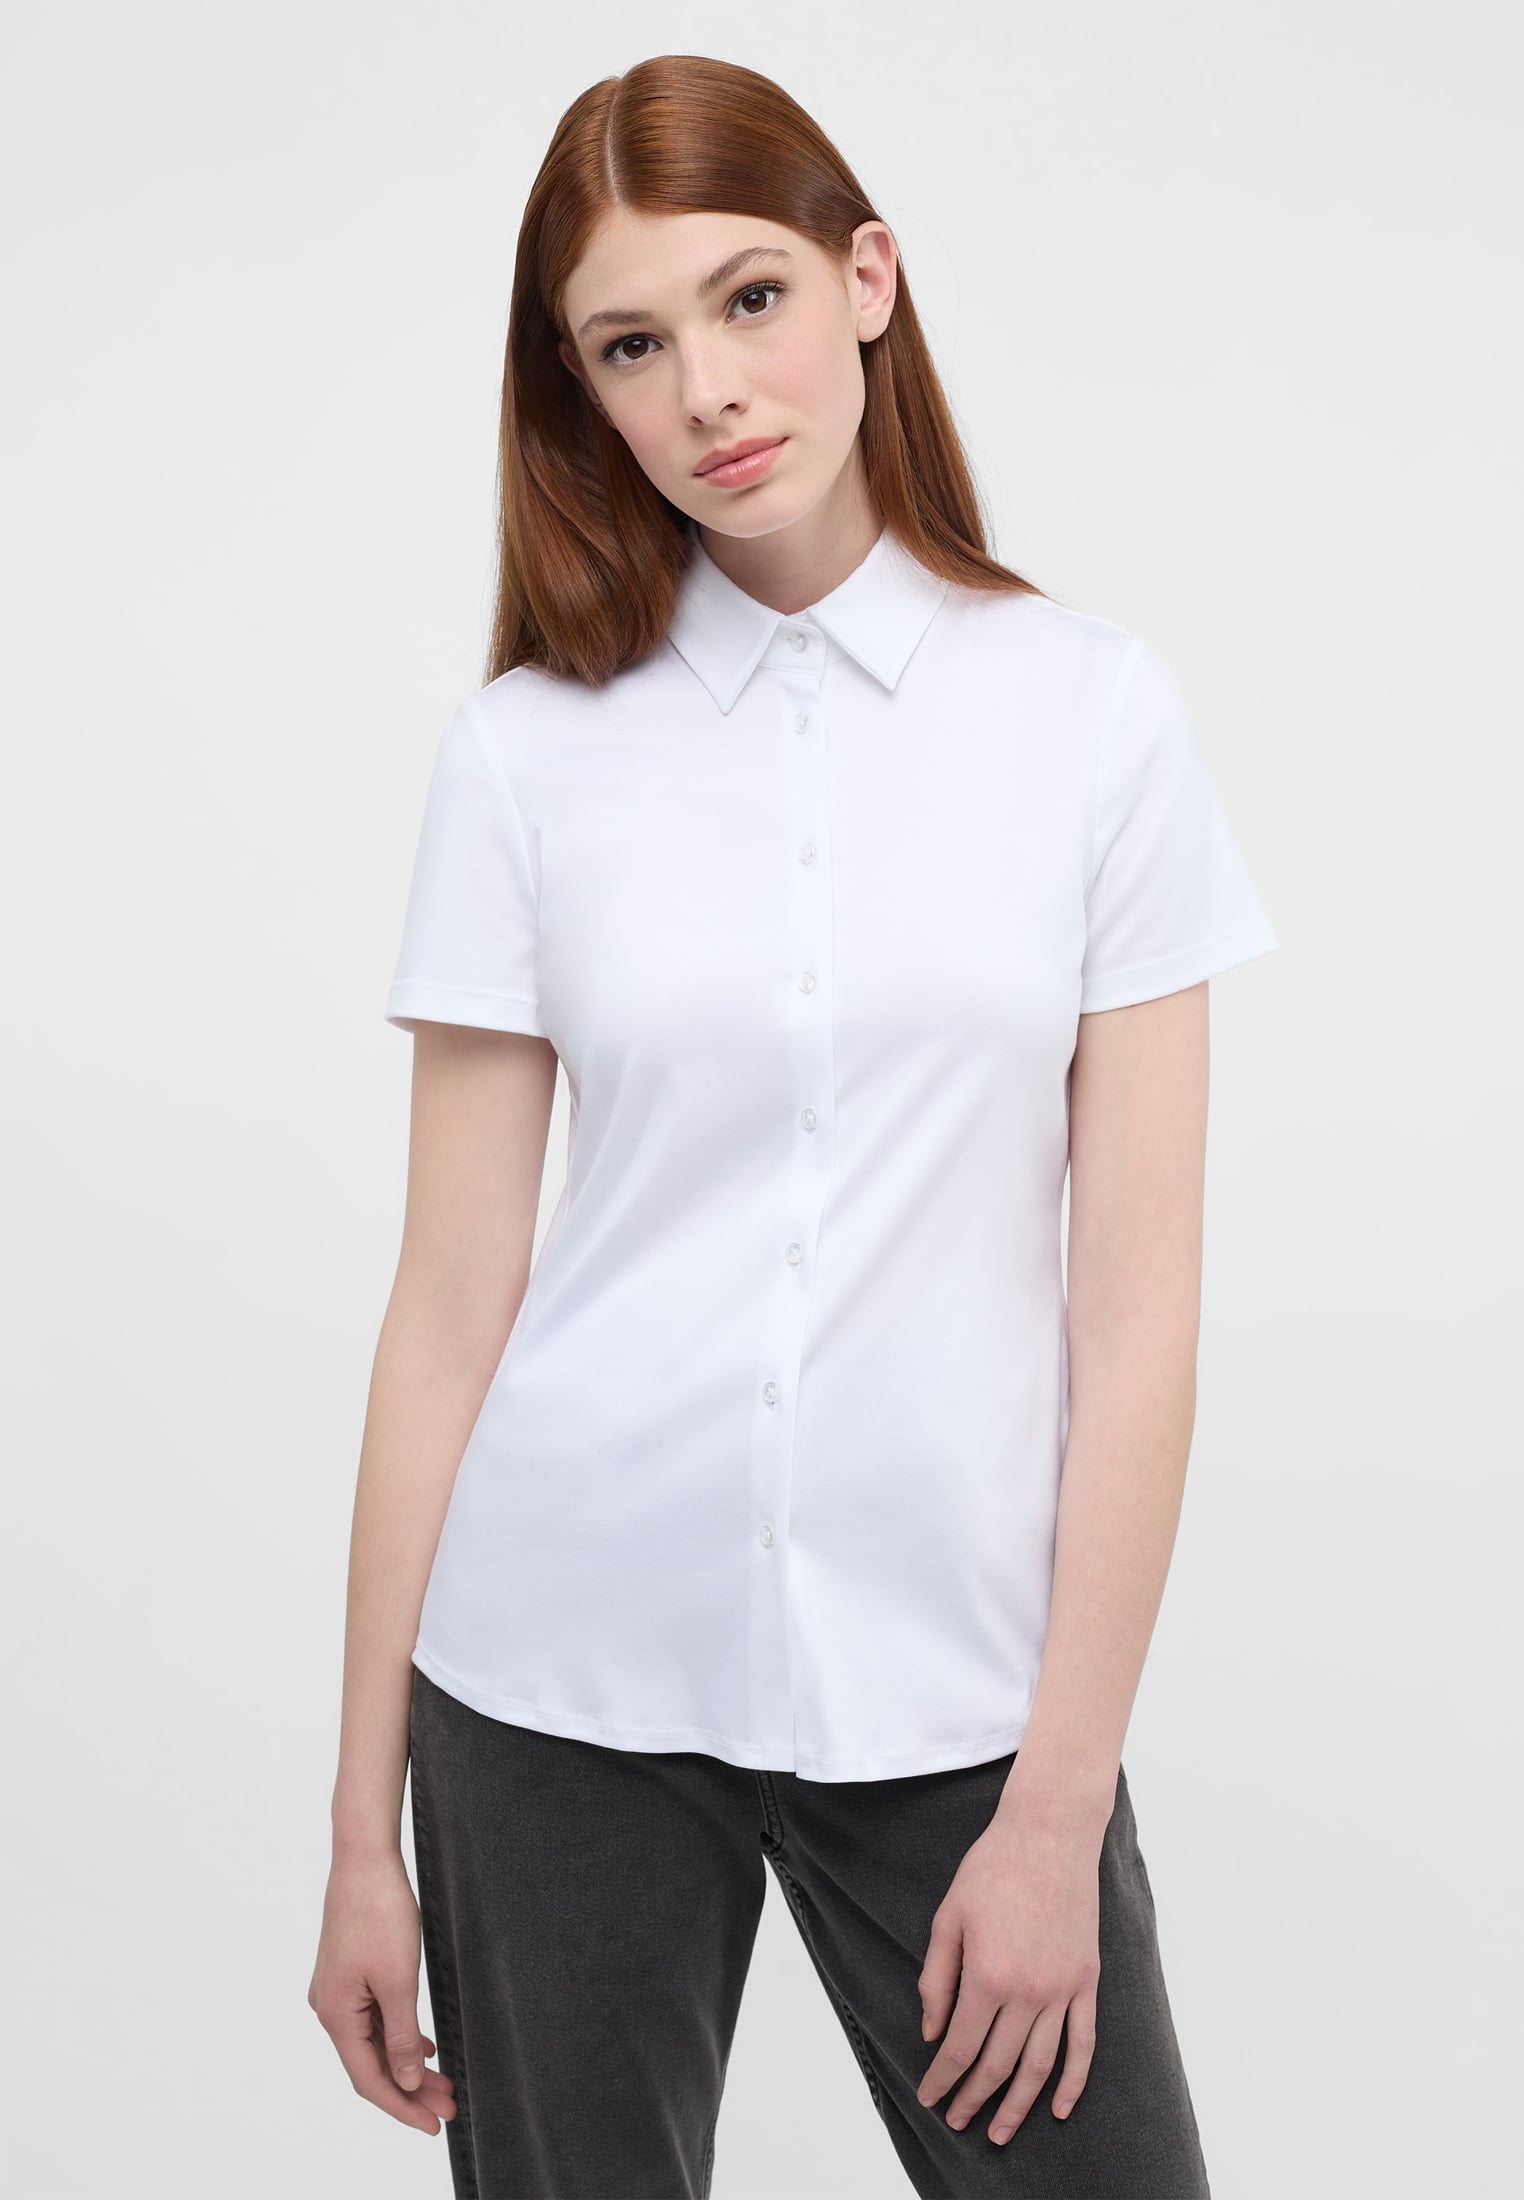 Jersey Shirt Blouse in white plain | white | 44 | short sleeve |  2BL04293-00-01-44-1/2